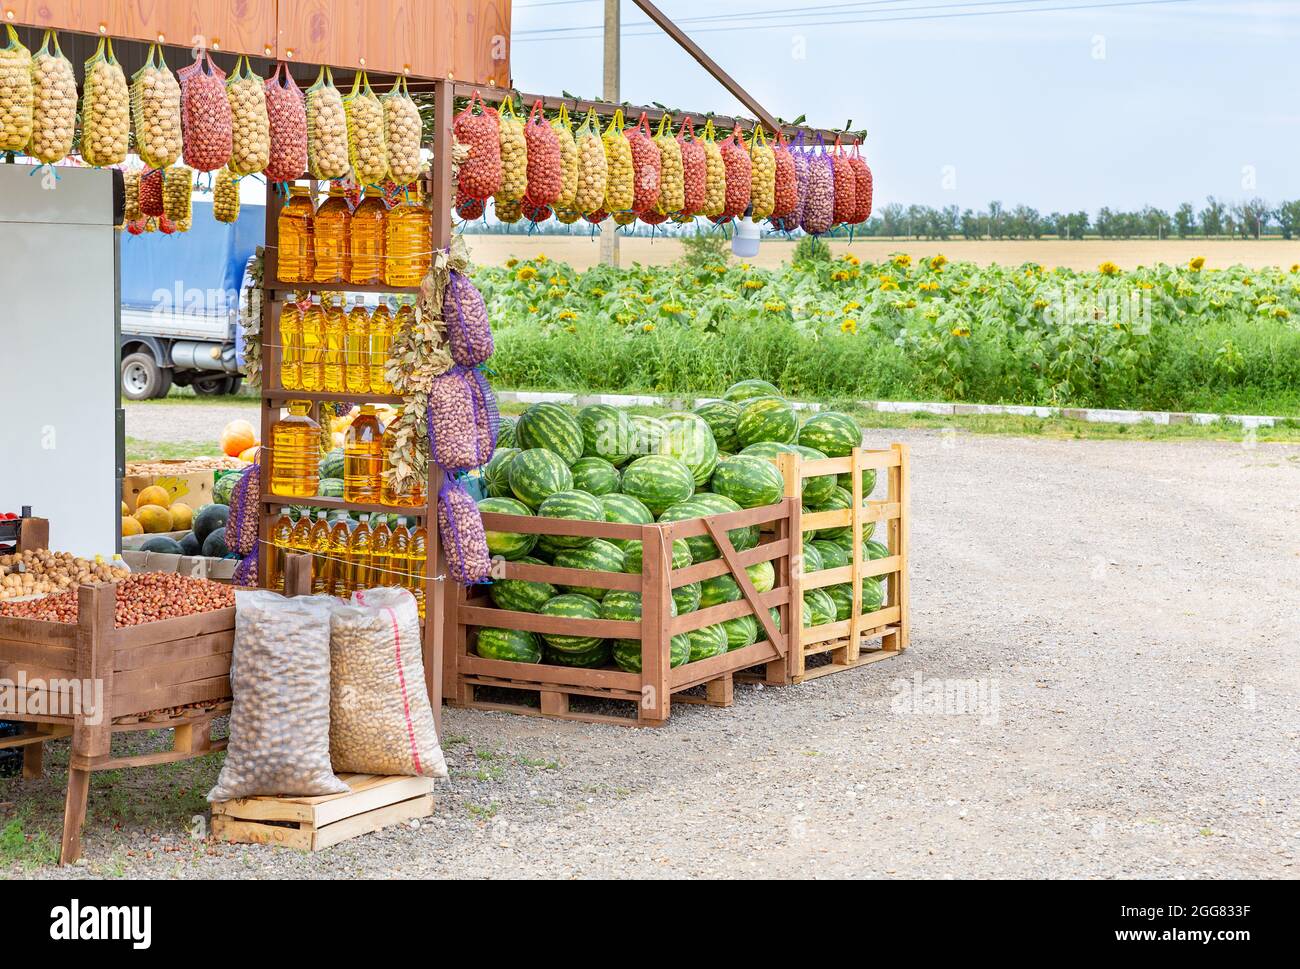 Les agriculteurs de bord de route vendent des produits bio sur fond de champ avec des tournesols. Huile végétale en bouteilles, pommes de terre en filets Banque D'Images